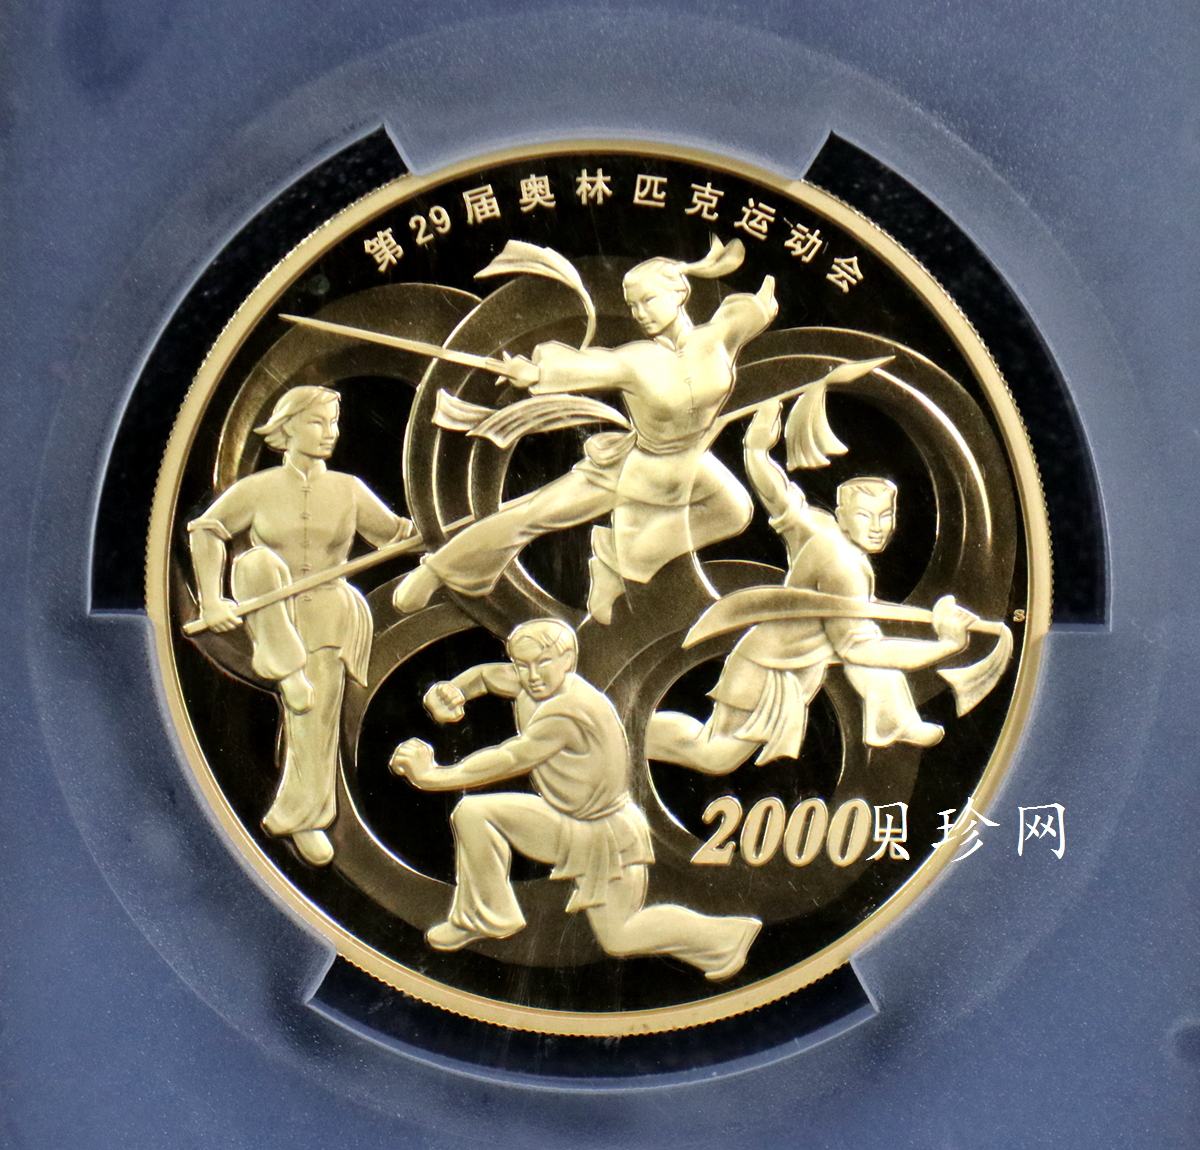 【070402】2008年第29届奥林匹克运动会第（2）组5盎司精制金币